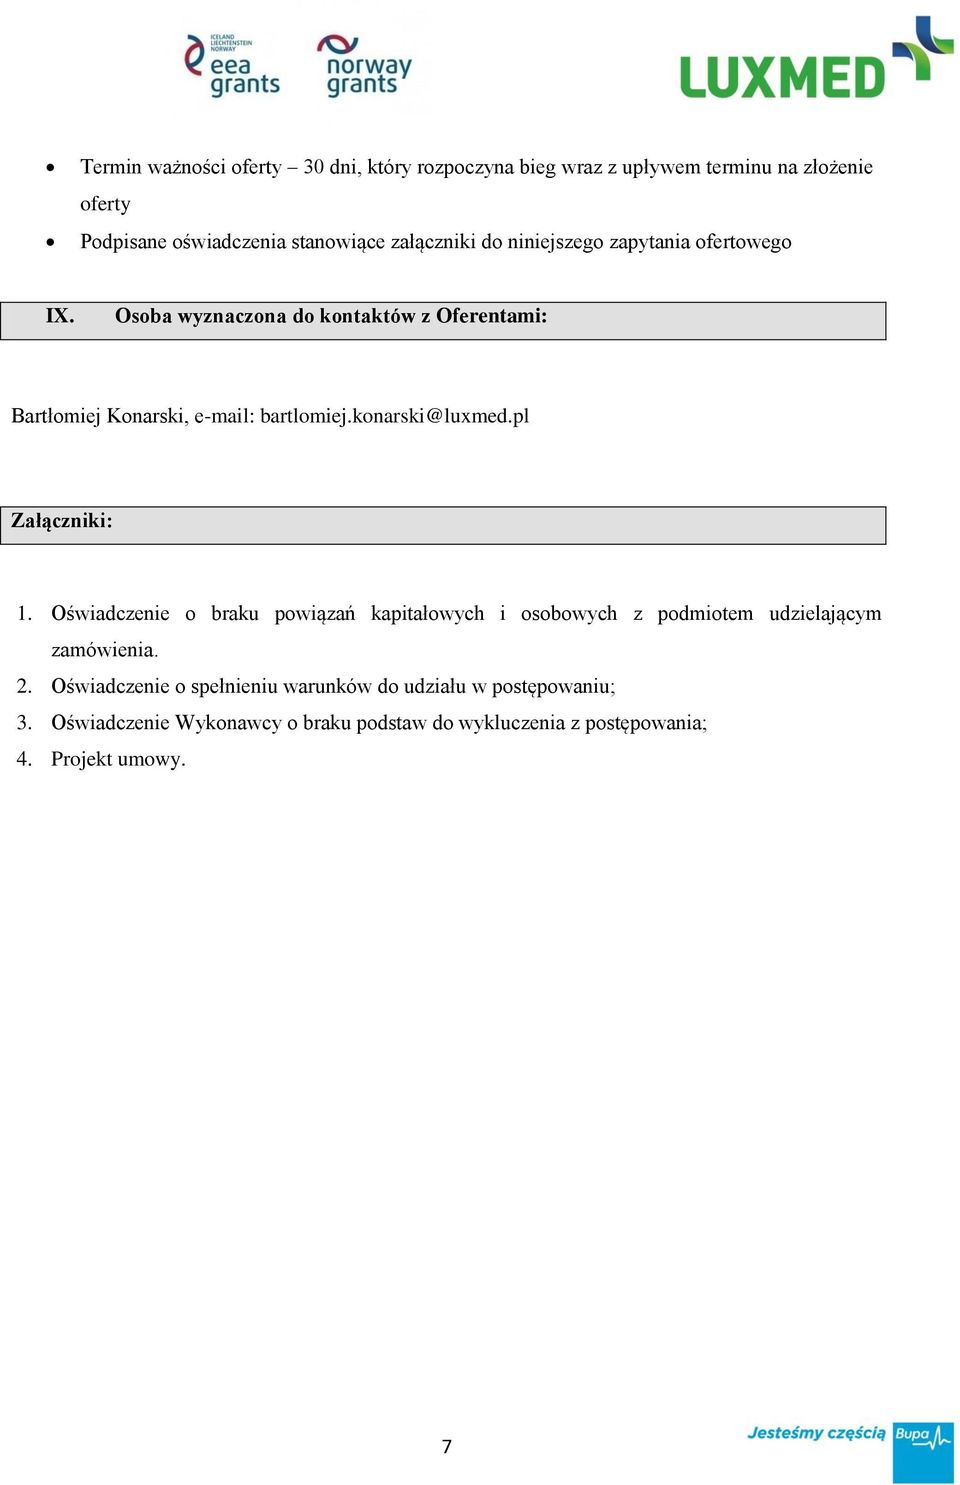 konarski@luxmed.pl Załączniki: 1. Oświadczenie o braku powiązań kapitałowych i osobowych z podmiotem udzielającym zamówienia. 2.